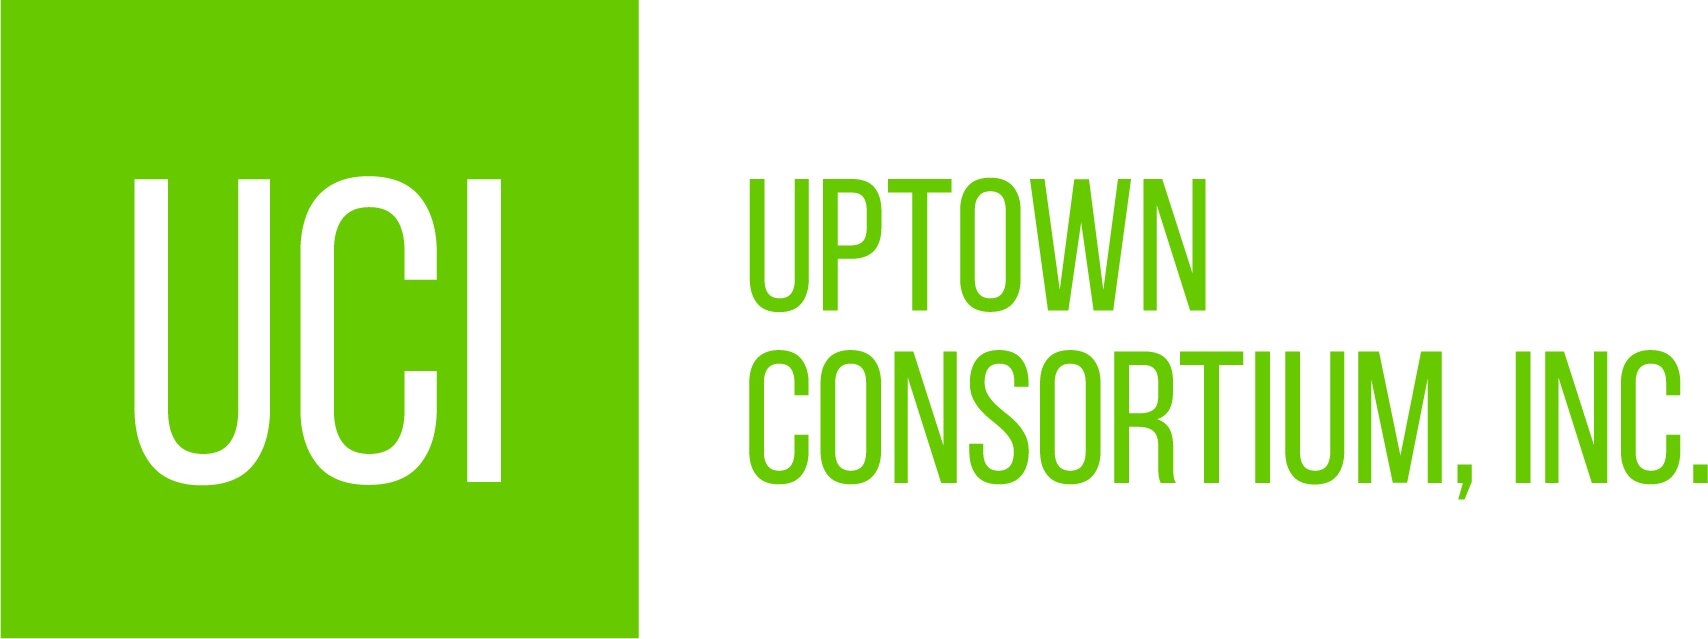 Uptown Consortium Inc.